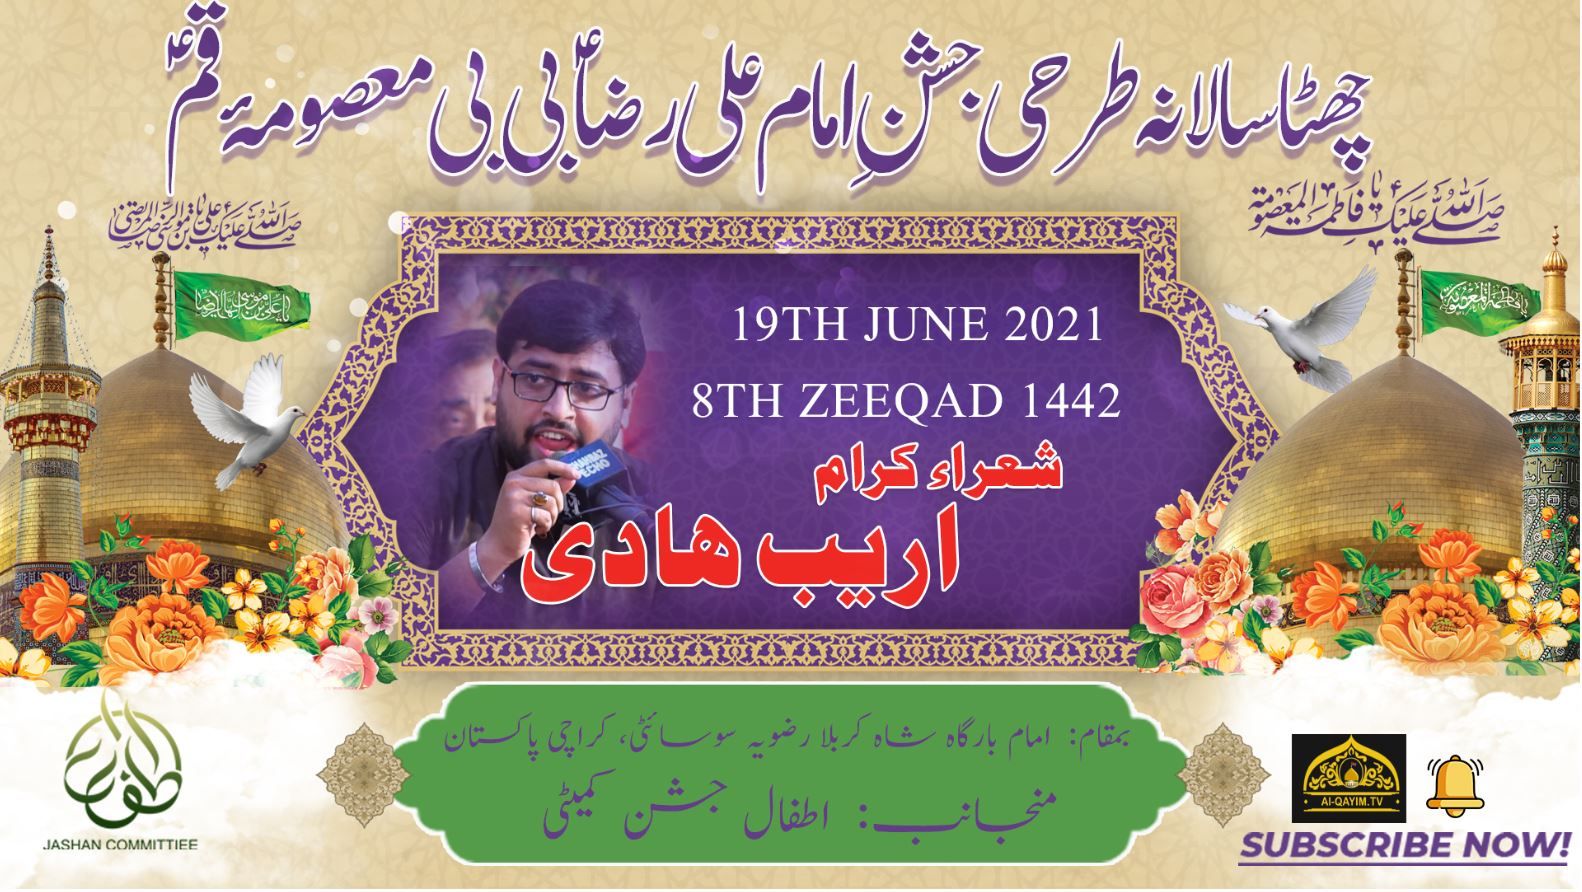 Syed Arib Hadi | Jashan Bibi Masooma & Imam Ali Raza - 19 June 2021 - Rizvia - Karachi